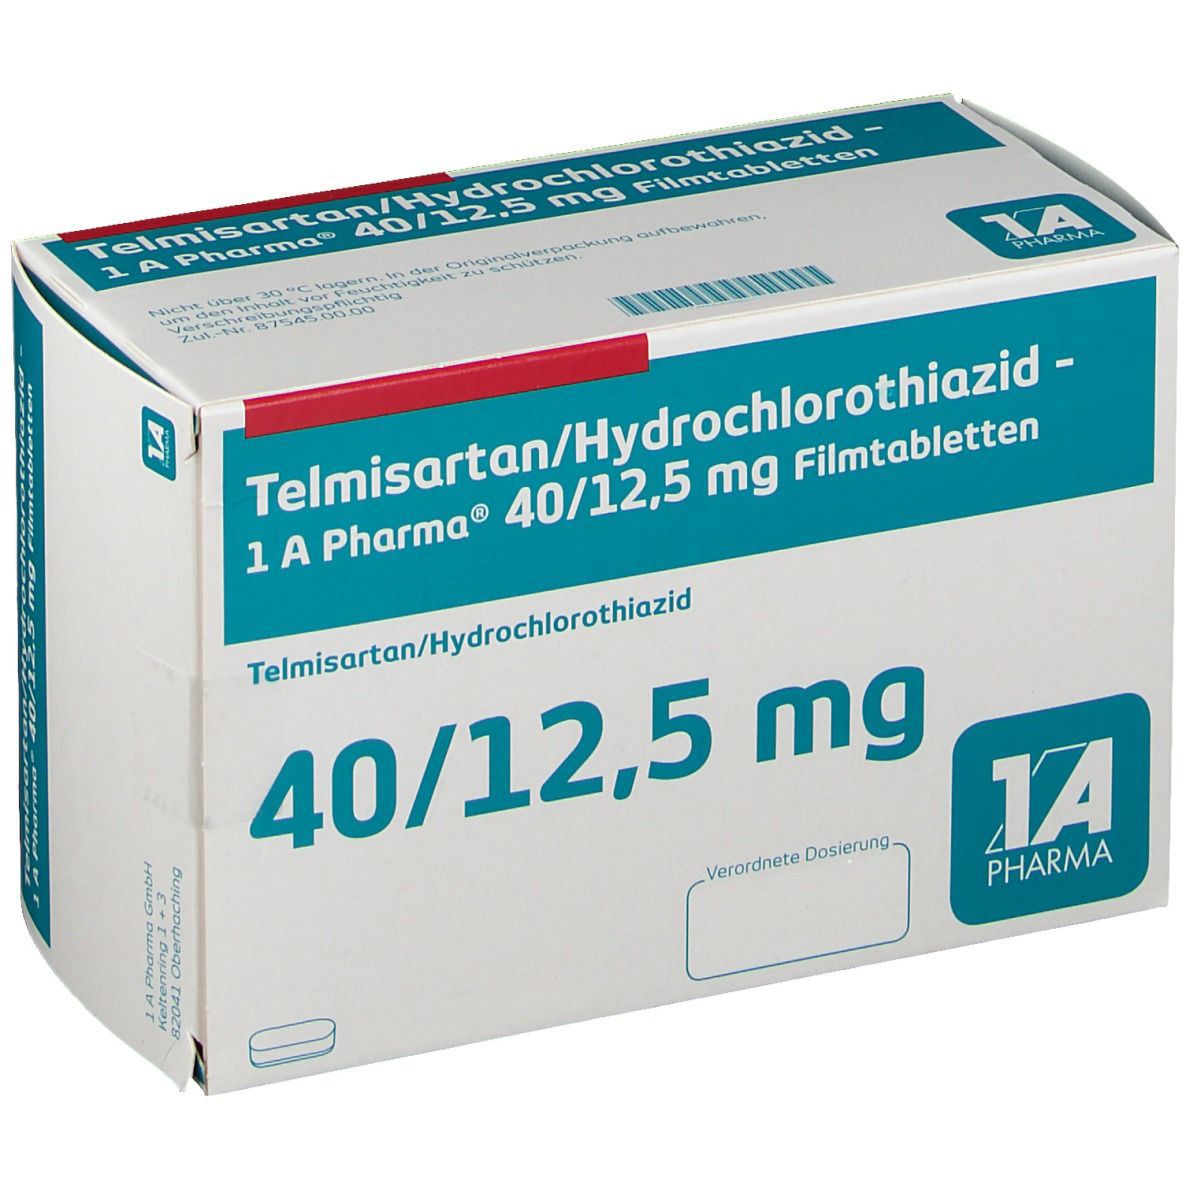 Telmisartan/Hydrochlorothiazid - 1 A Pharma® 40/12,5 mg